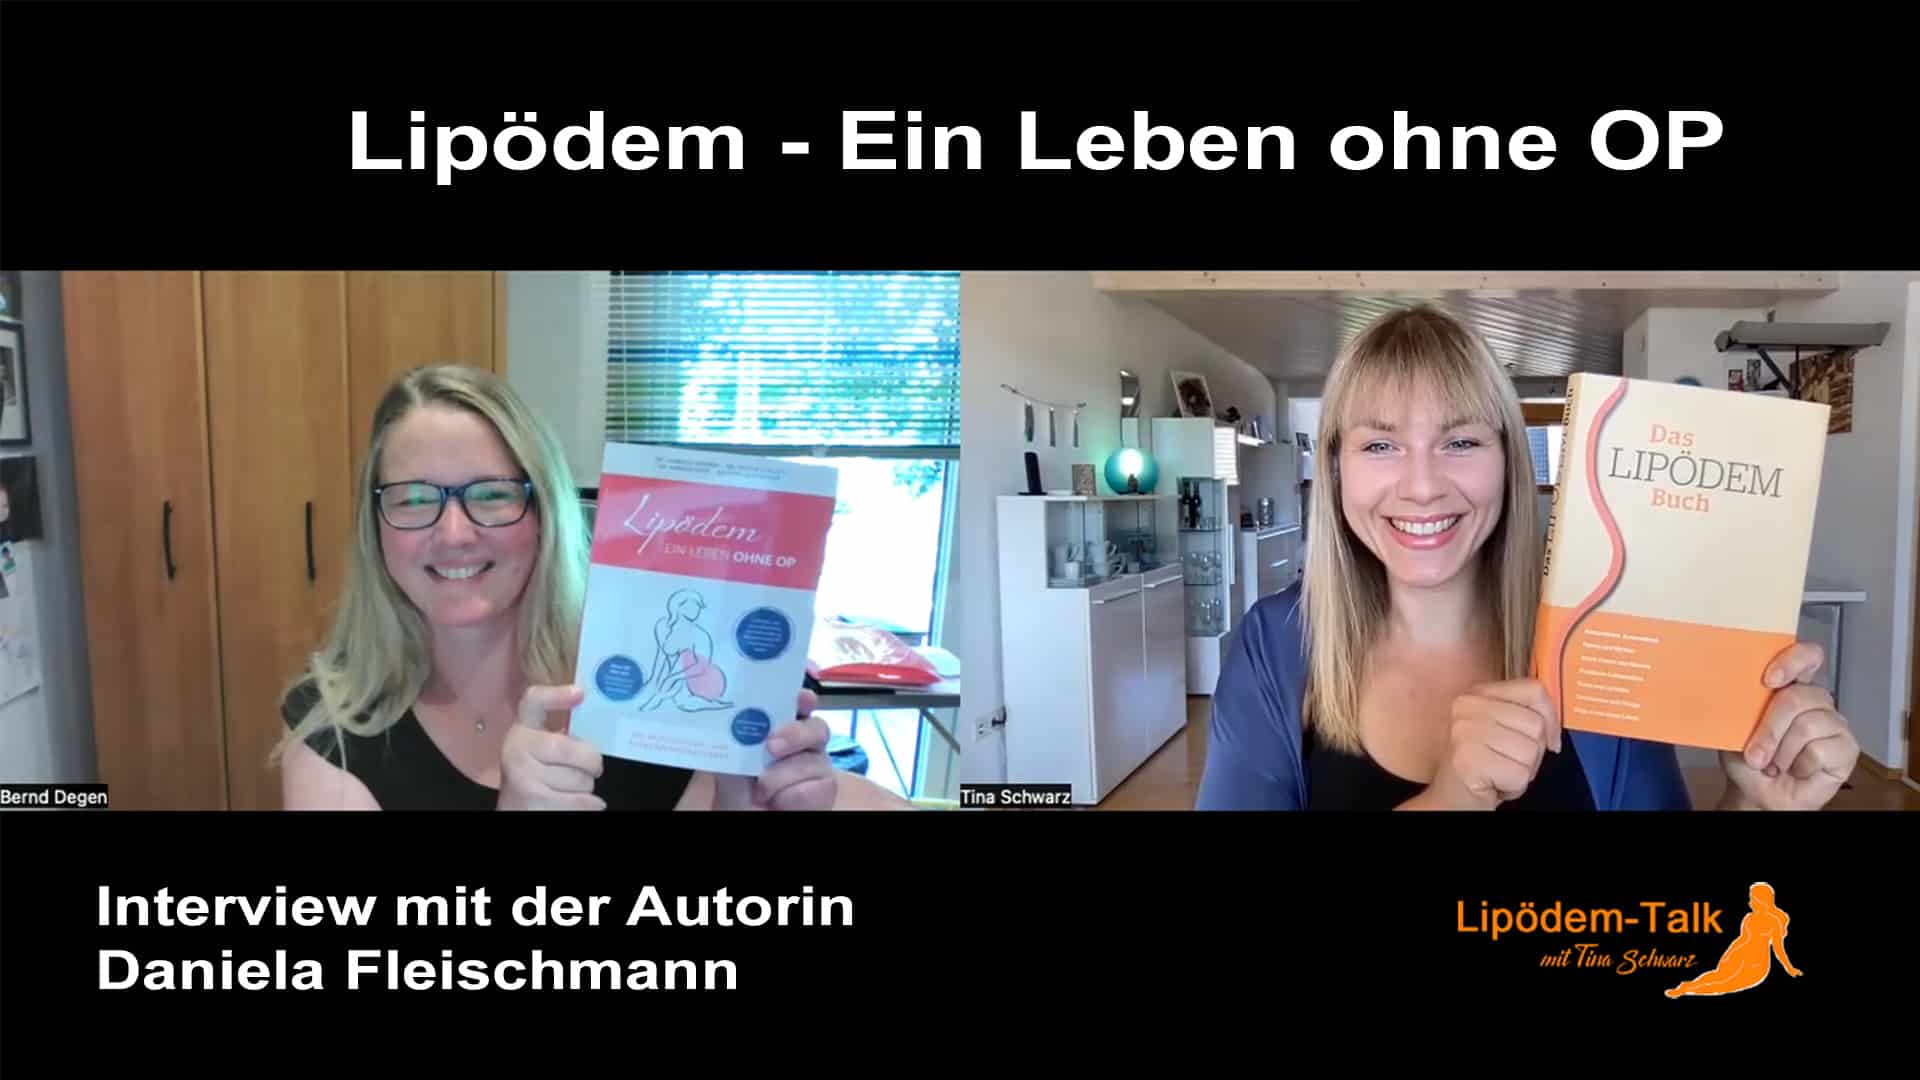 Lipödem - Ein Leben ohne OP - Interview mit der Autorin Daniela Fleischmann